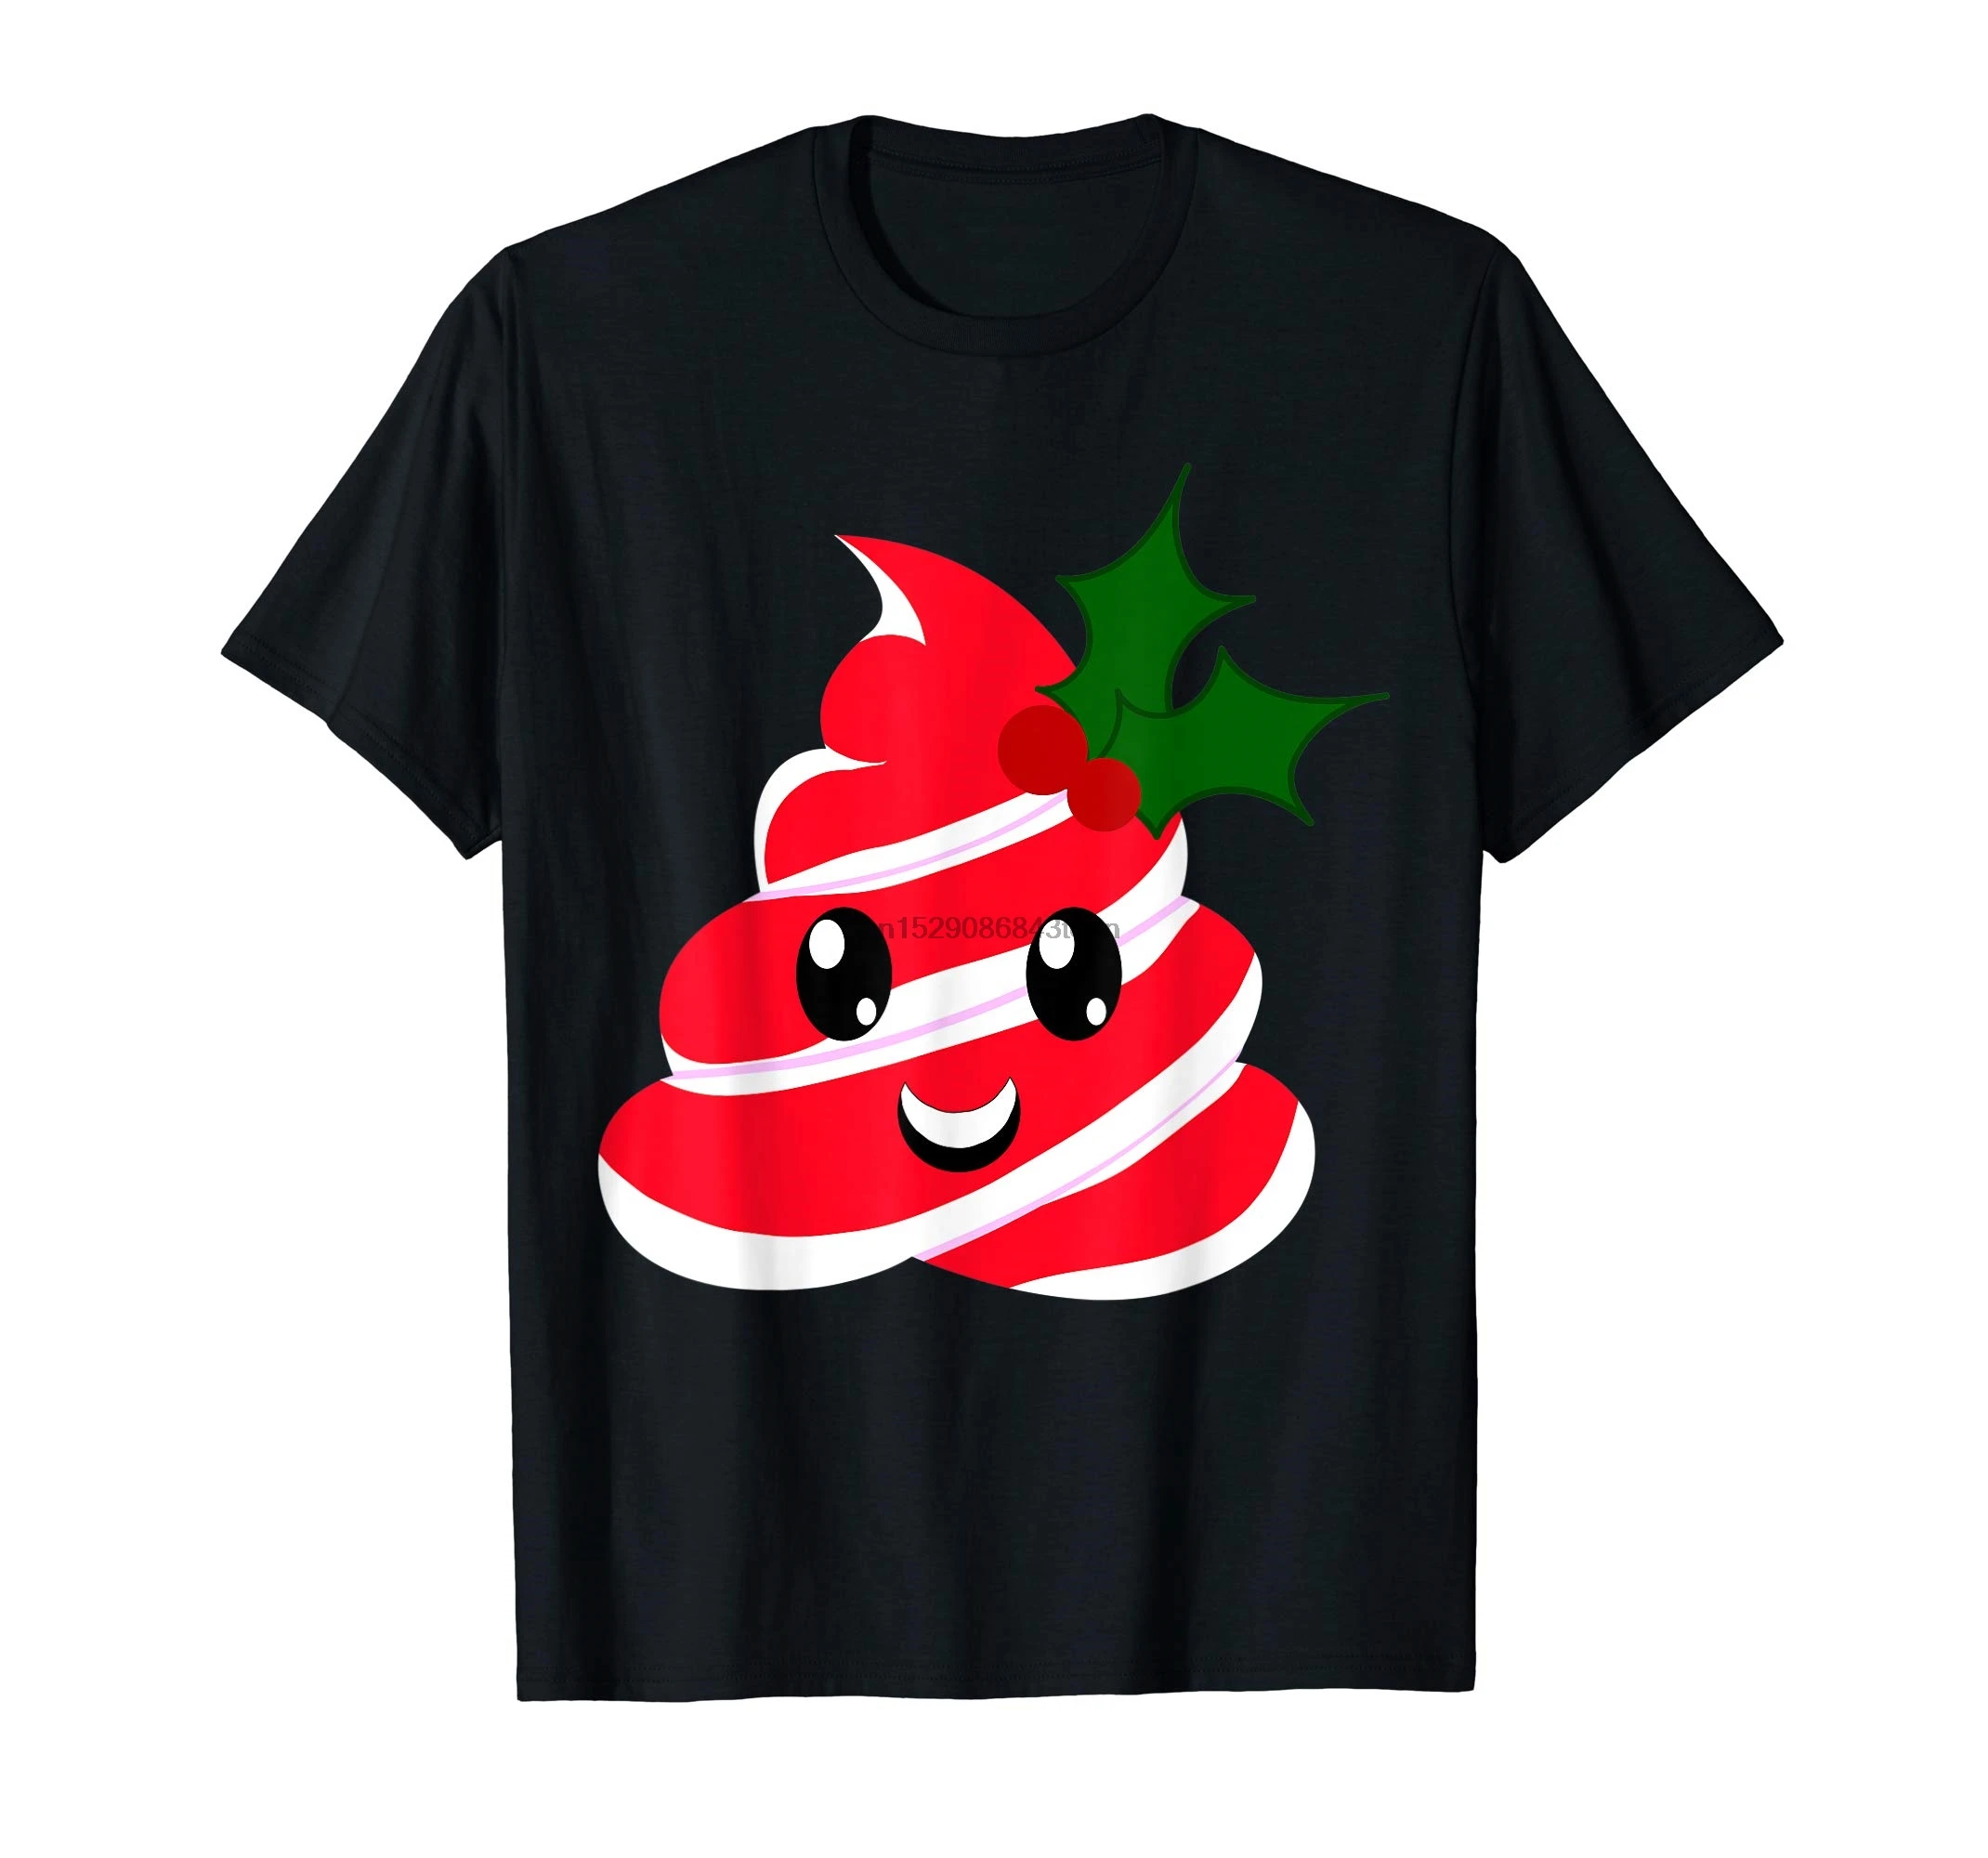 Navidad Poop Emojis regalo T Shirt Camiseta los hombres Negro|Camisetas| - AliExpress